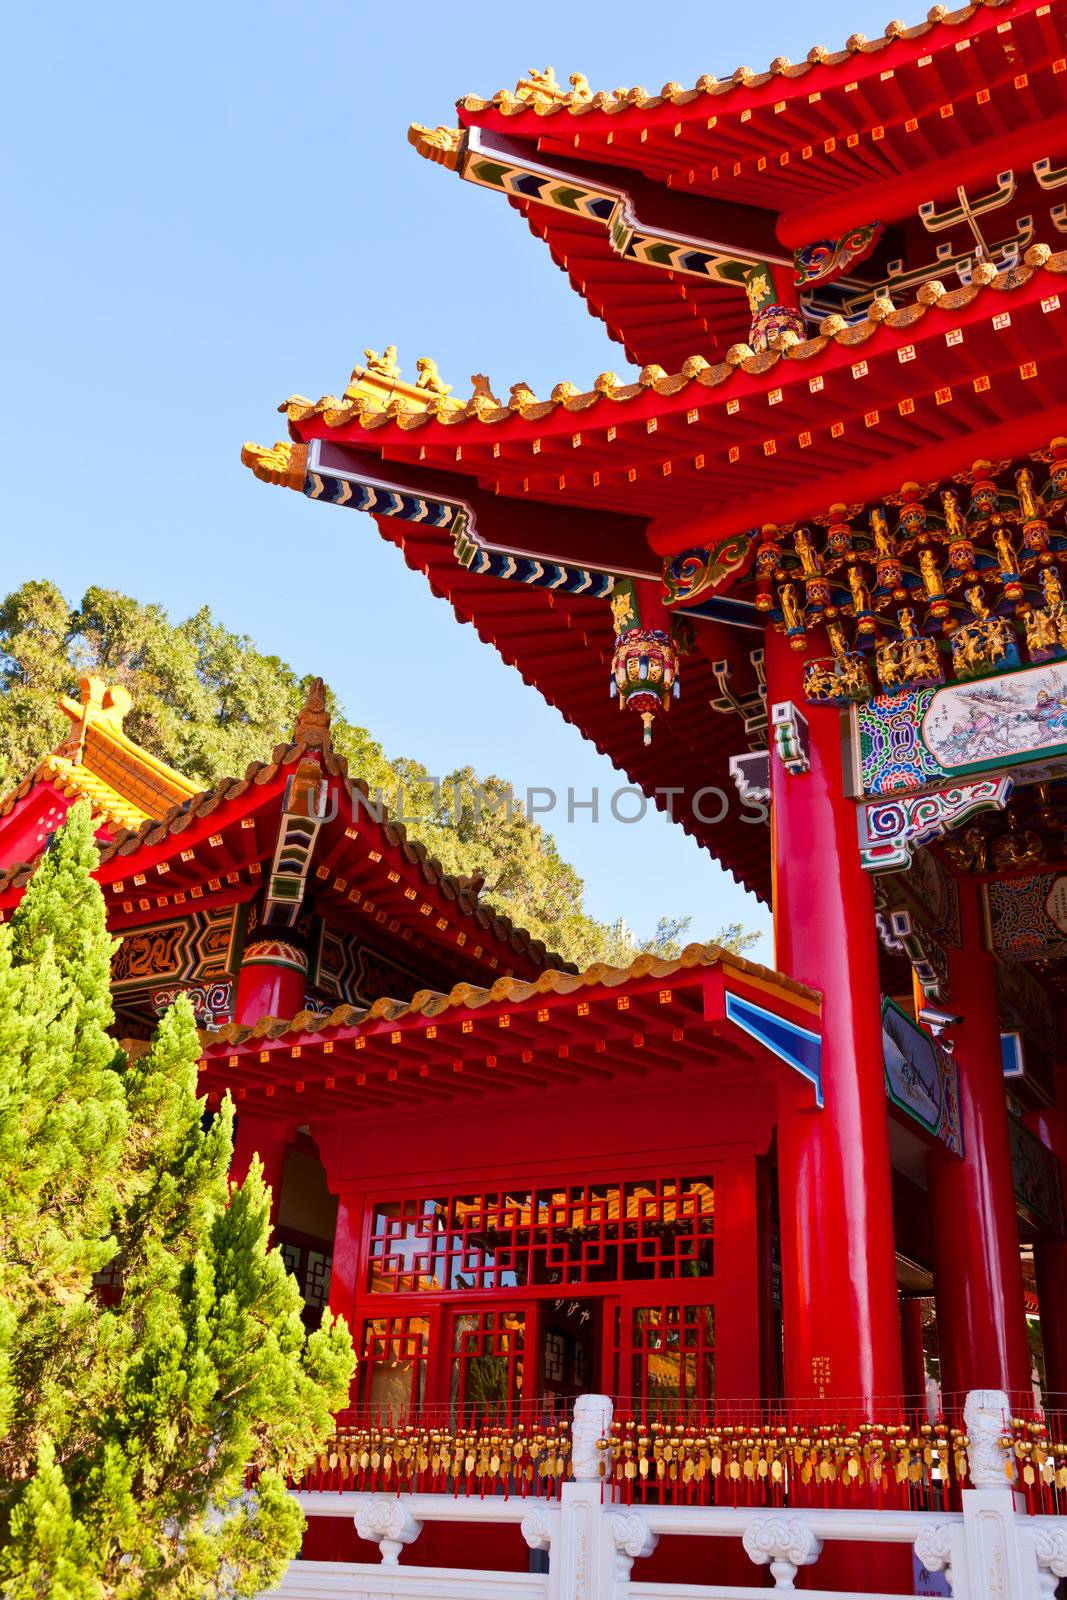 Wenwu Temple detail by naumoid